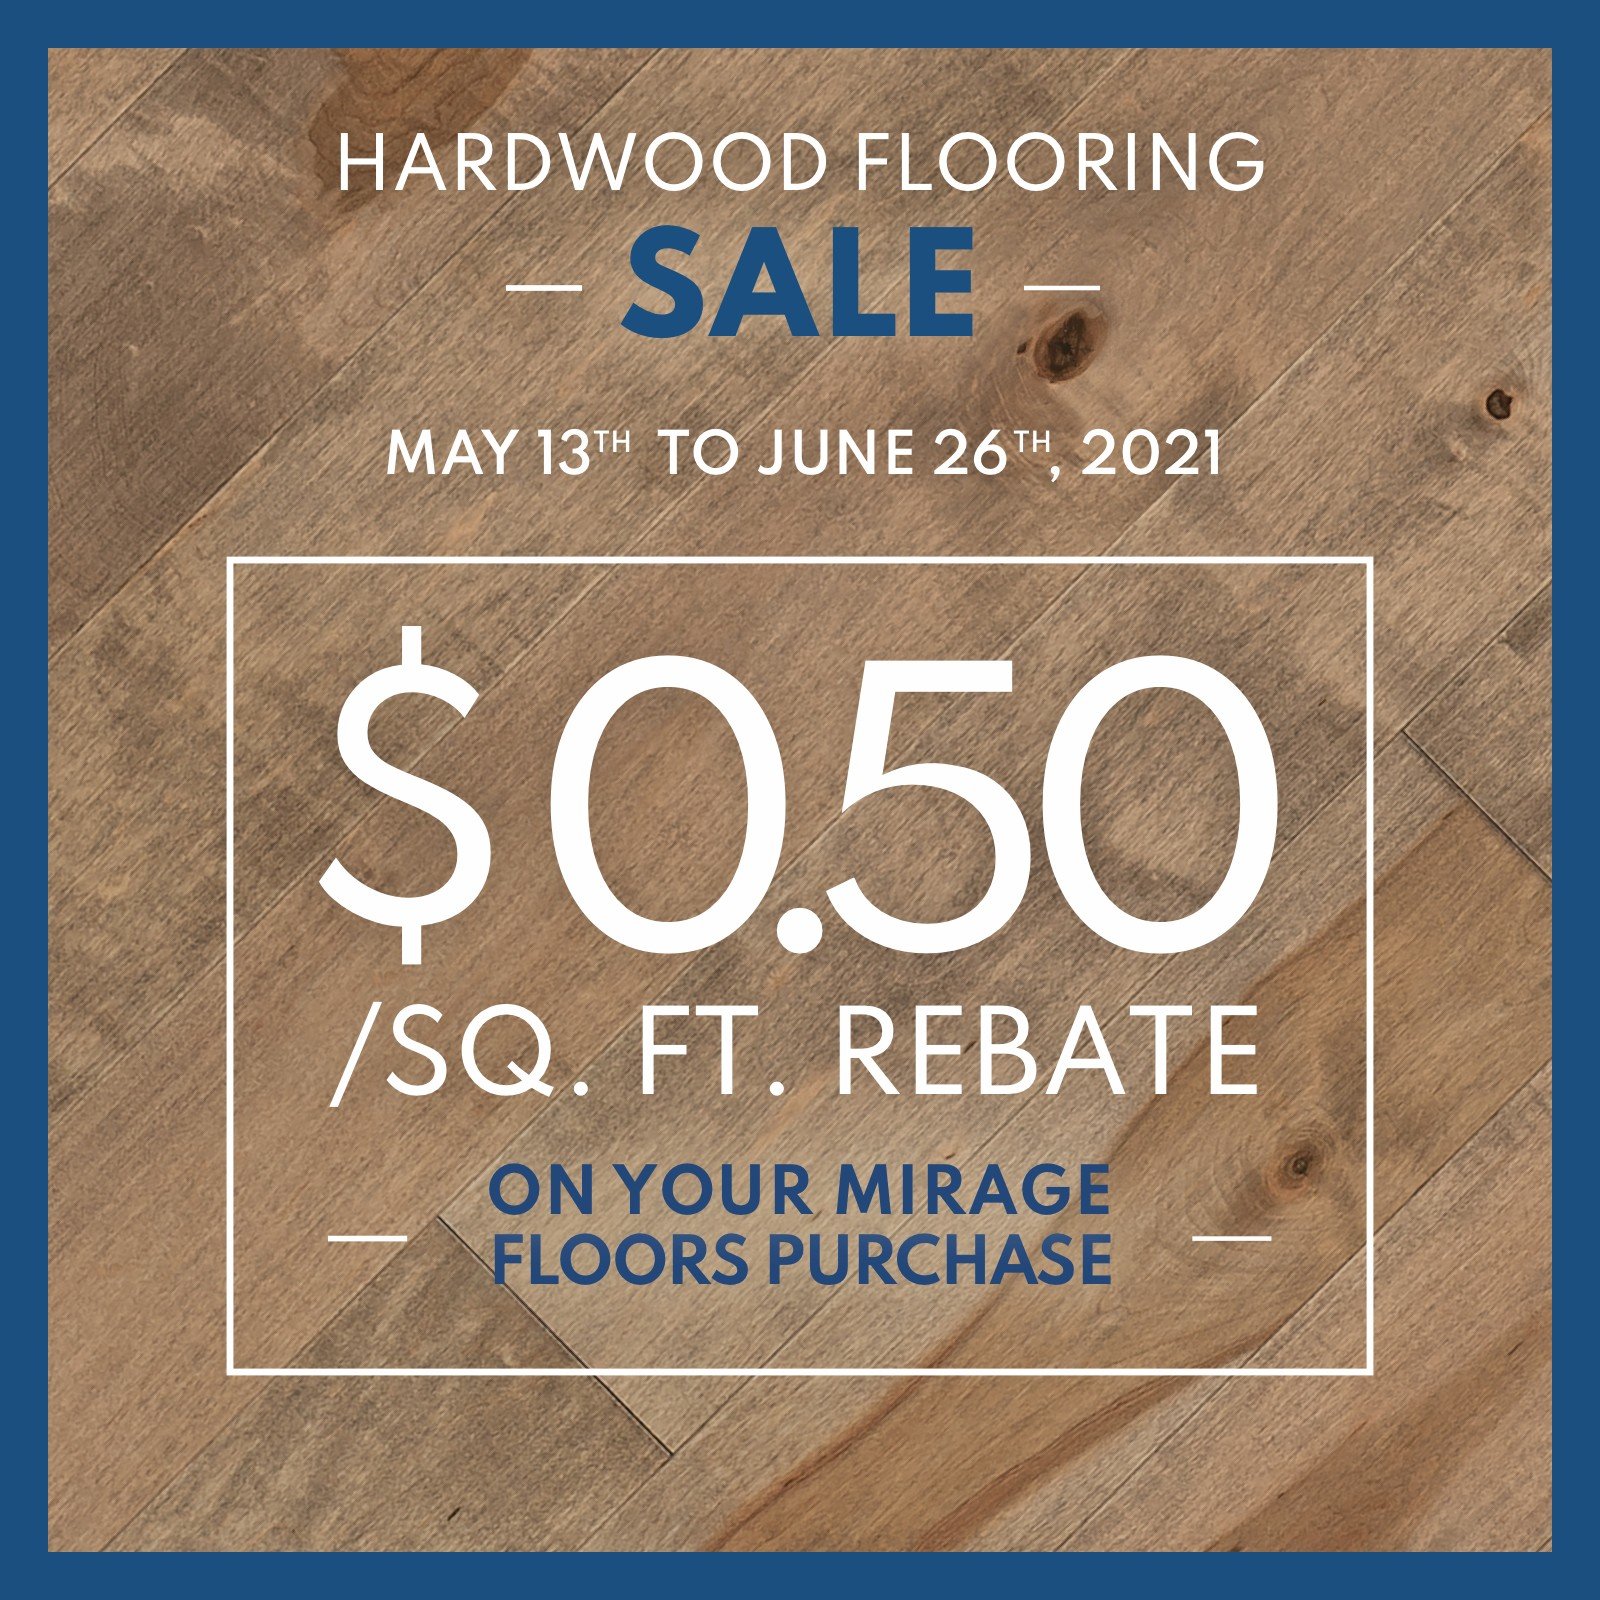 Hardwood Floor Rebates Promos Specials Mirage Floors US 